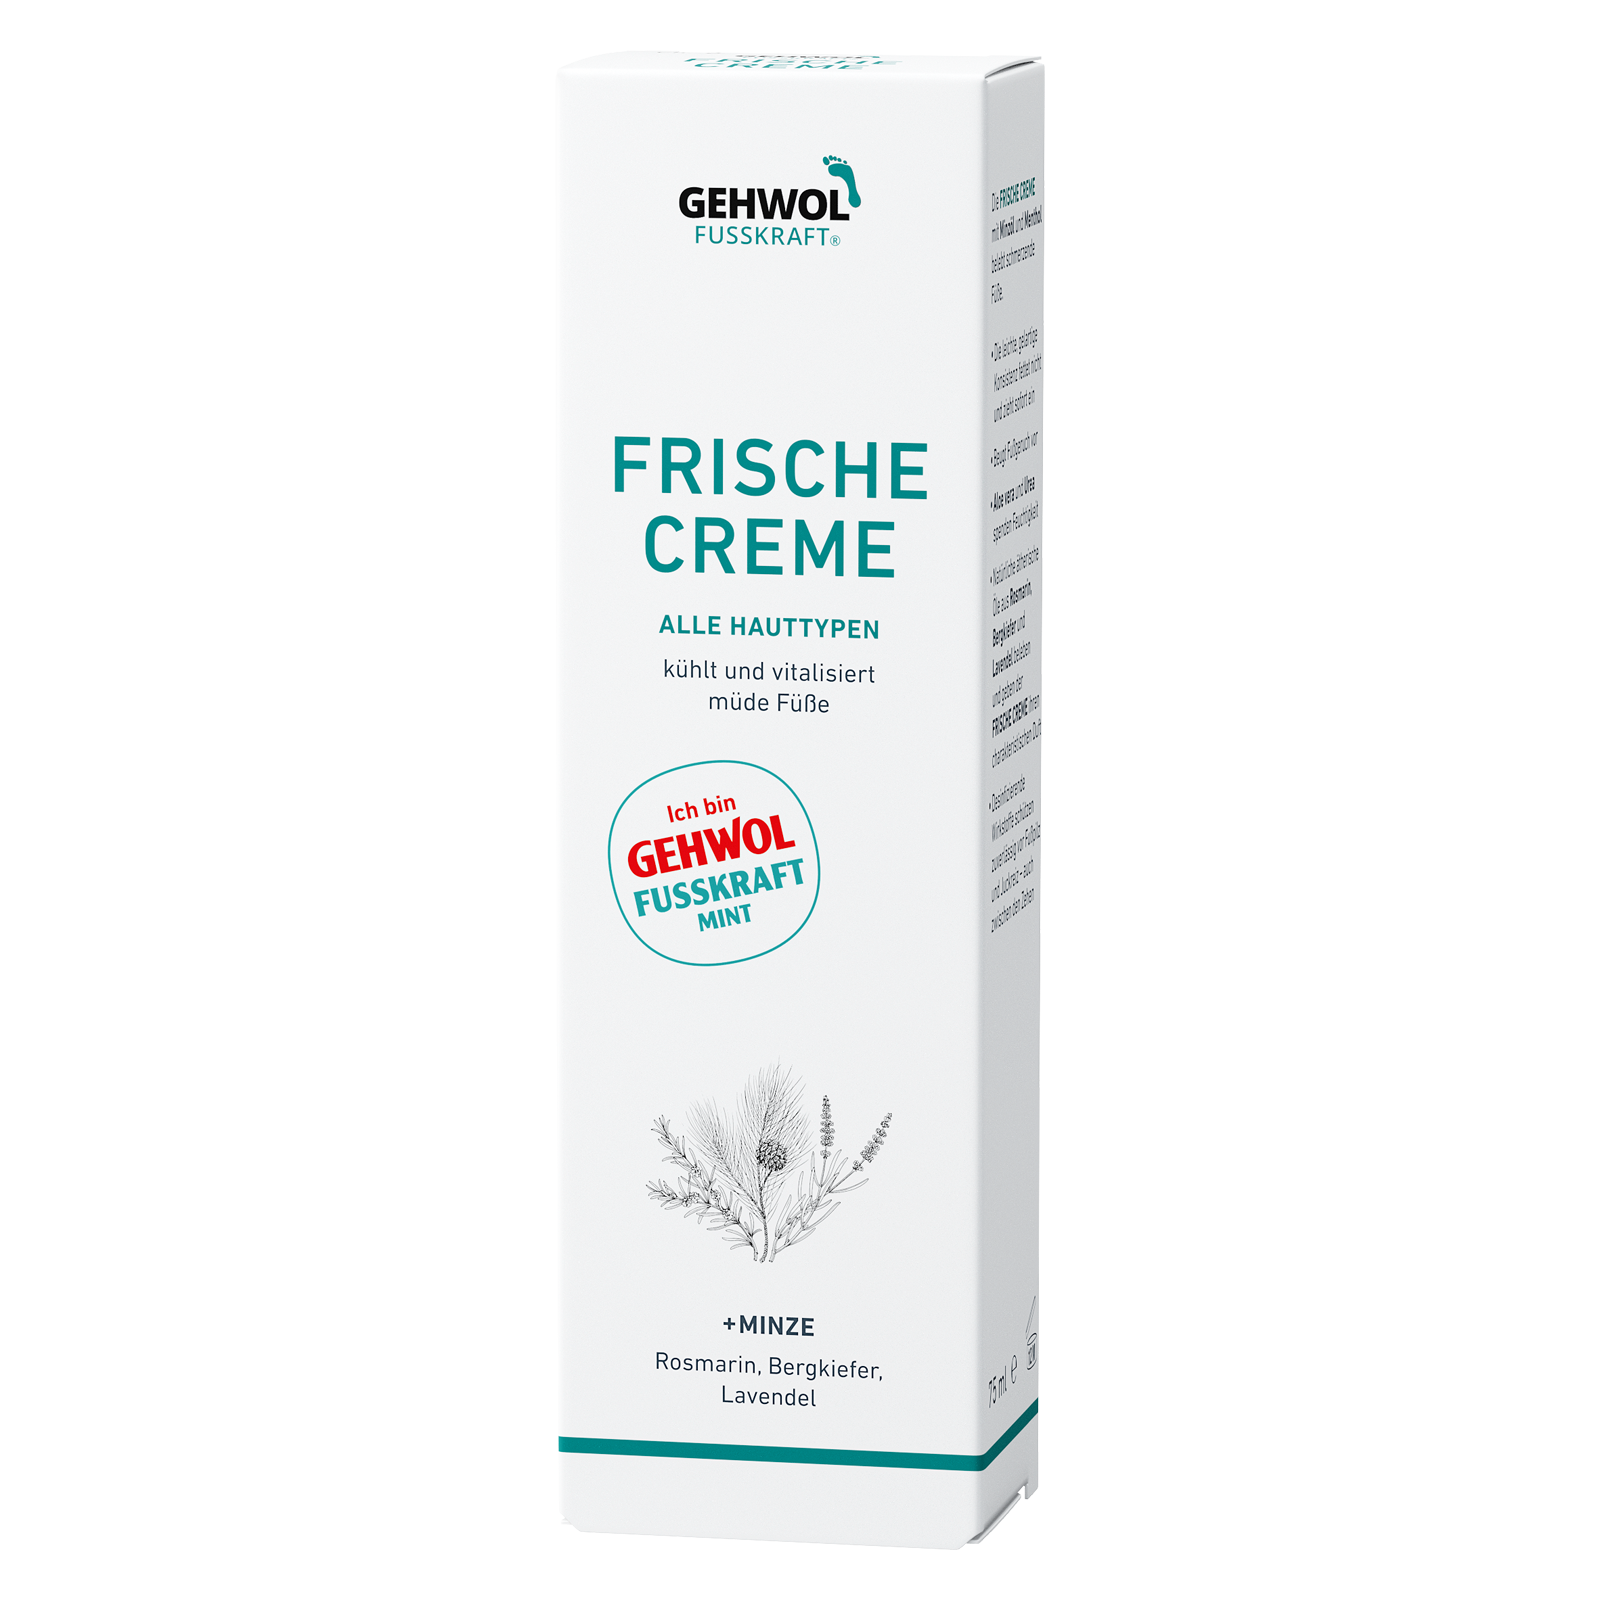 GEHWOL FUSSKRAFT® Frische Creme (Mint), 75 ml